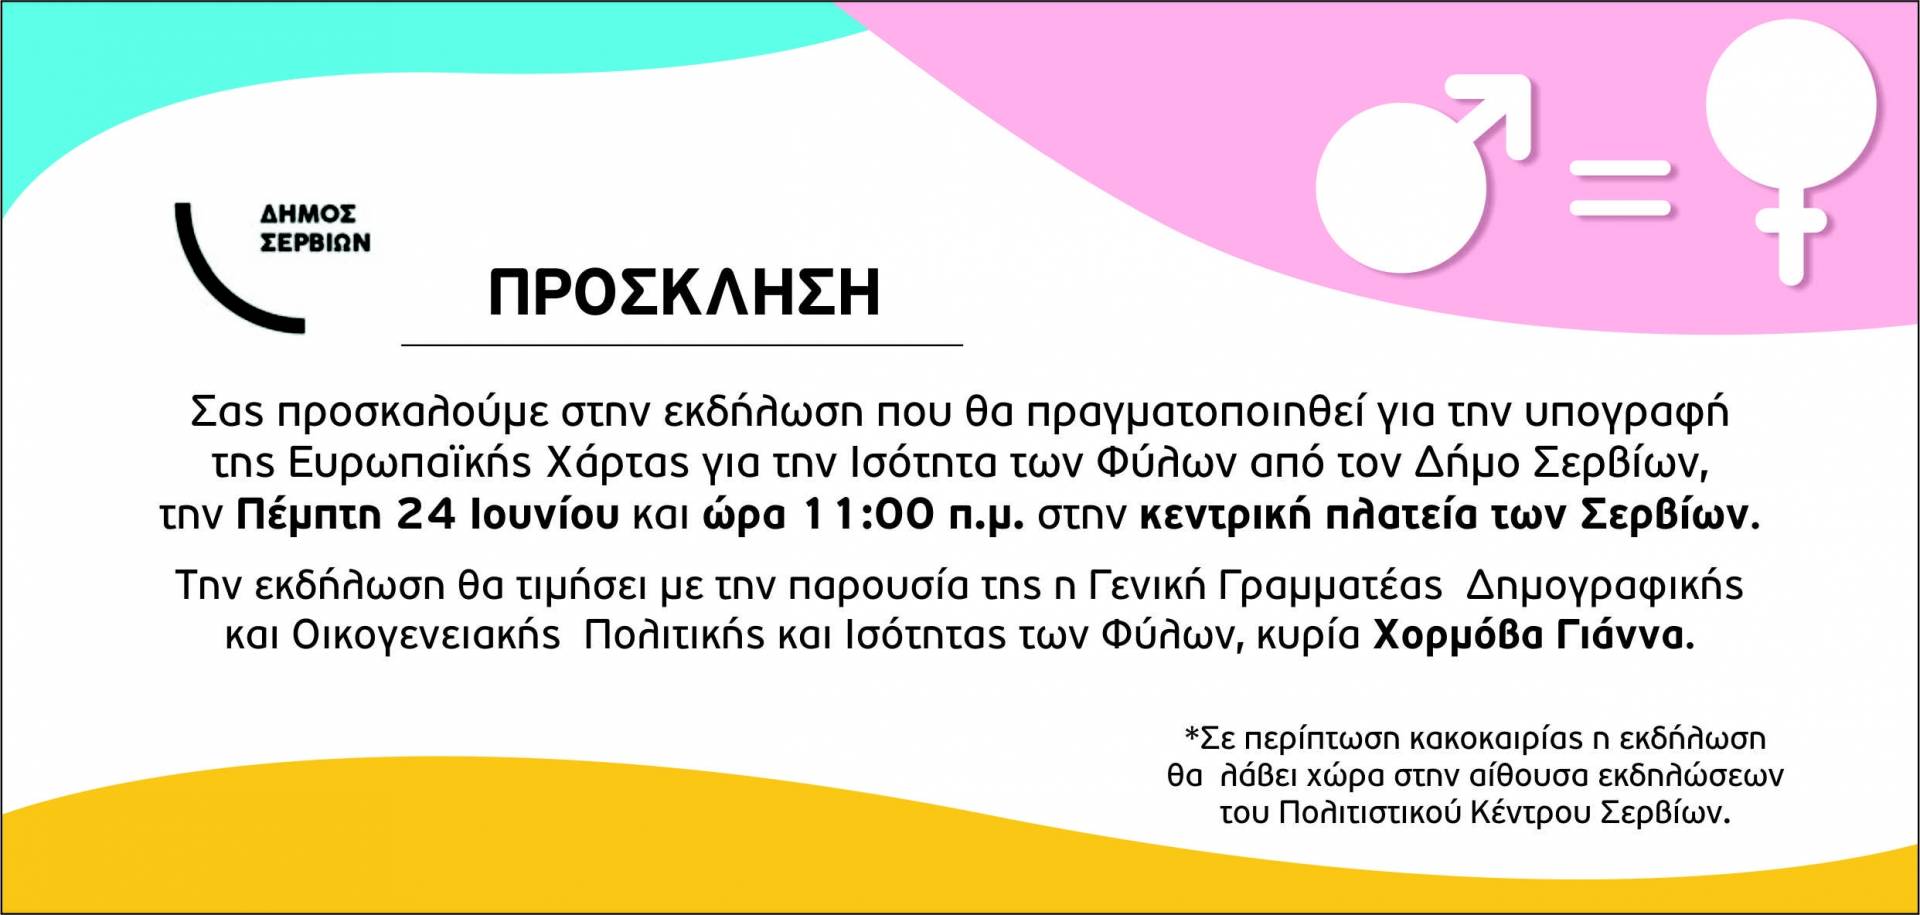 Εκδήλωση για την Ισότητα των Φύλων από τον Δήμο Σερβίων, την Πέμπτη 24 Ιουνίου